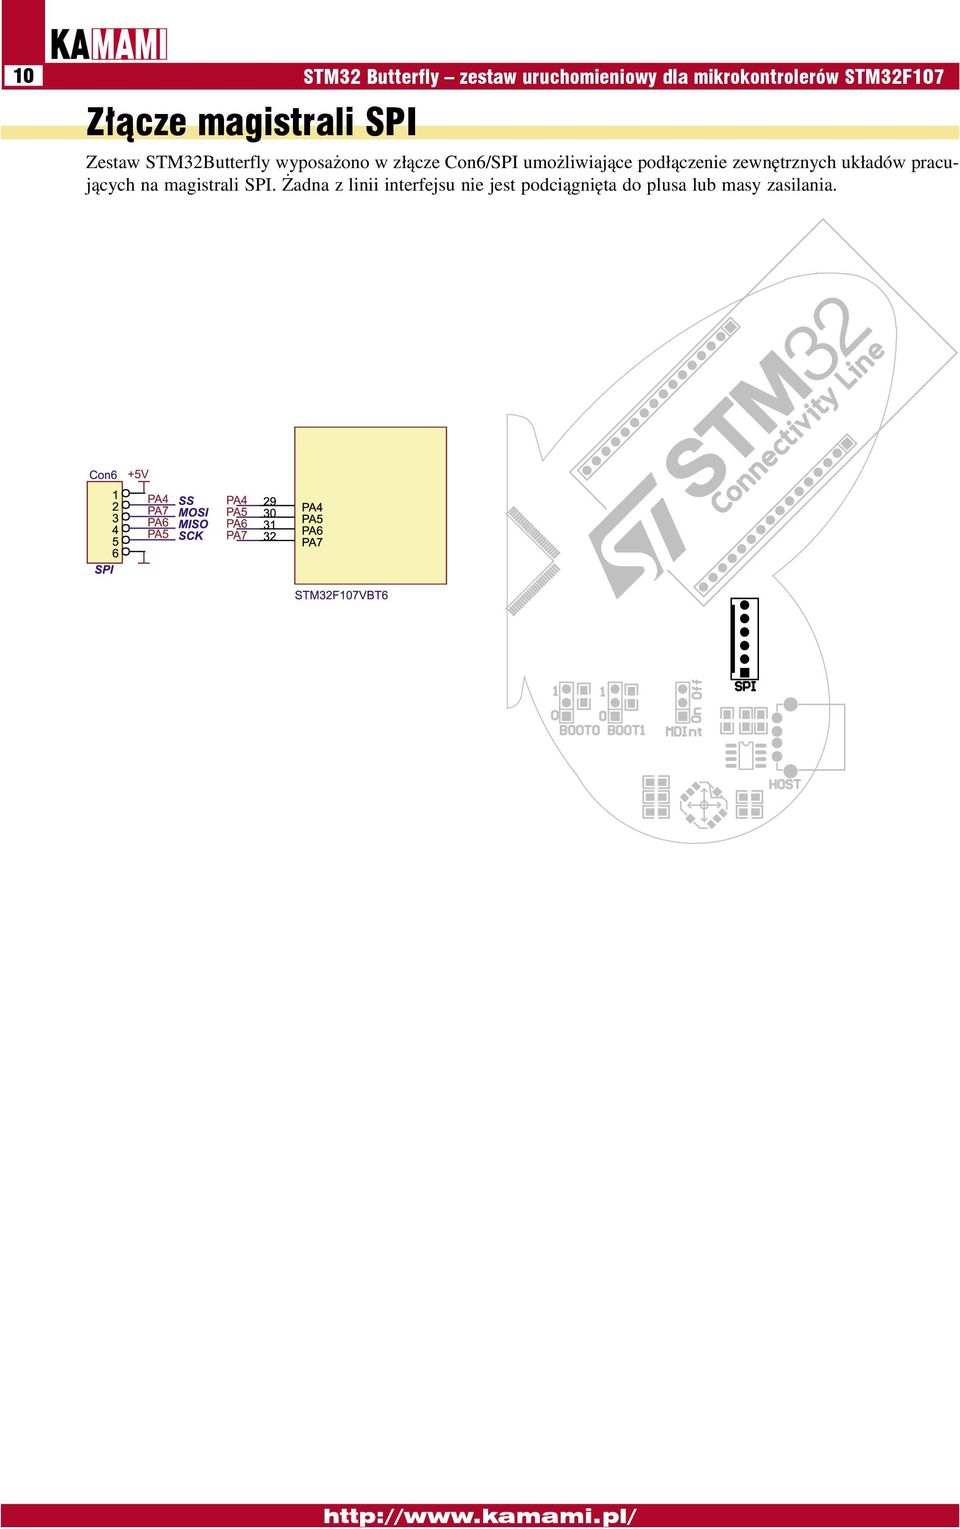 Con6/SPI umożliwiające podłączenie zewnętrznych układów pracujących na